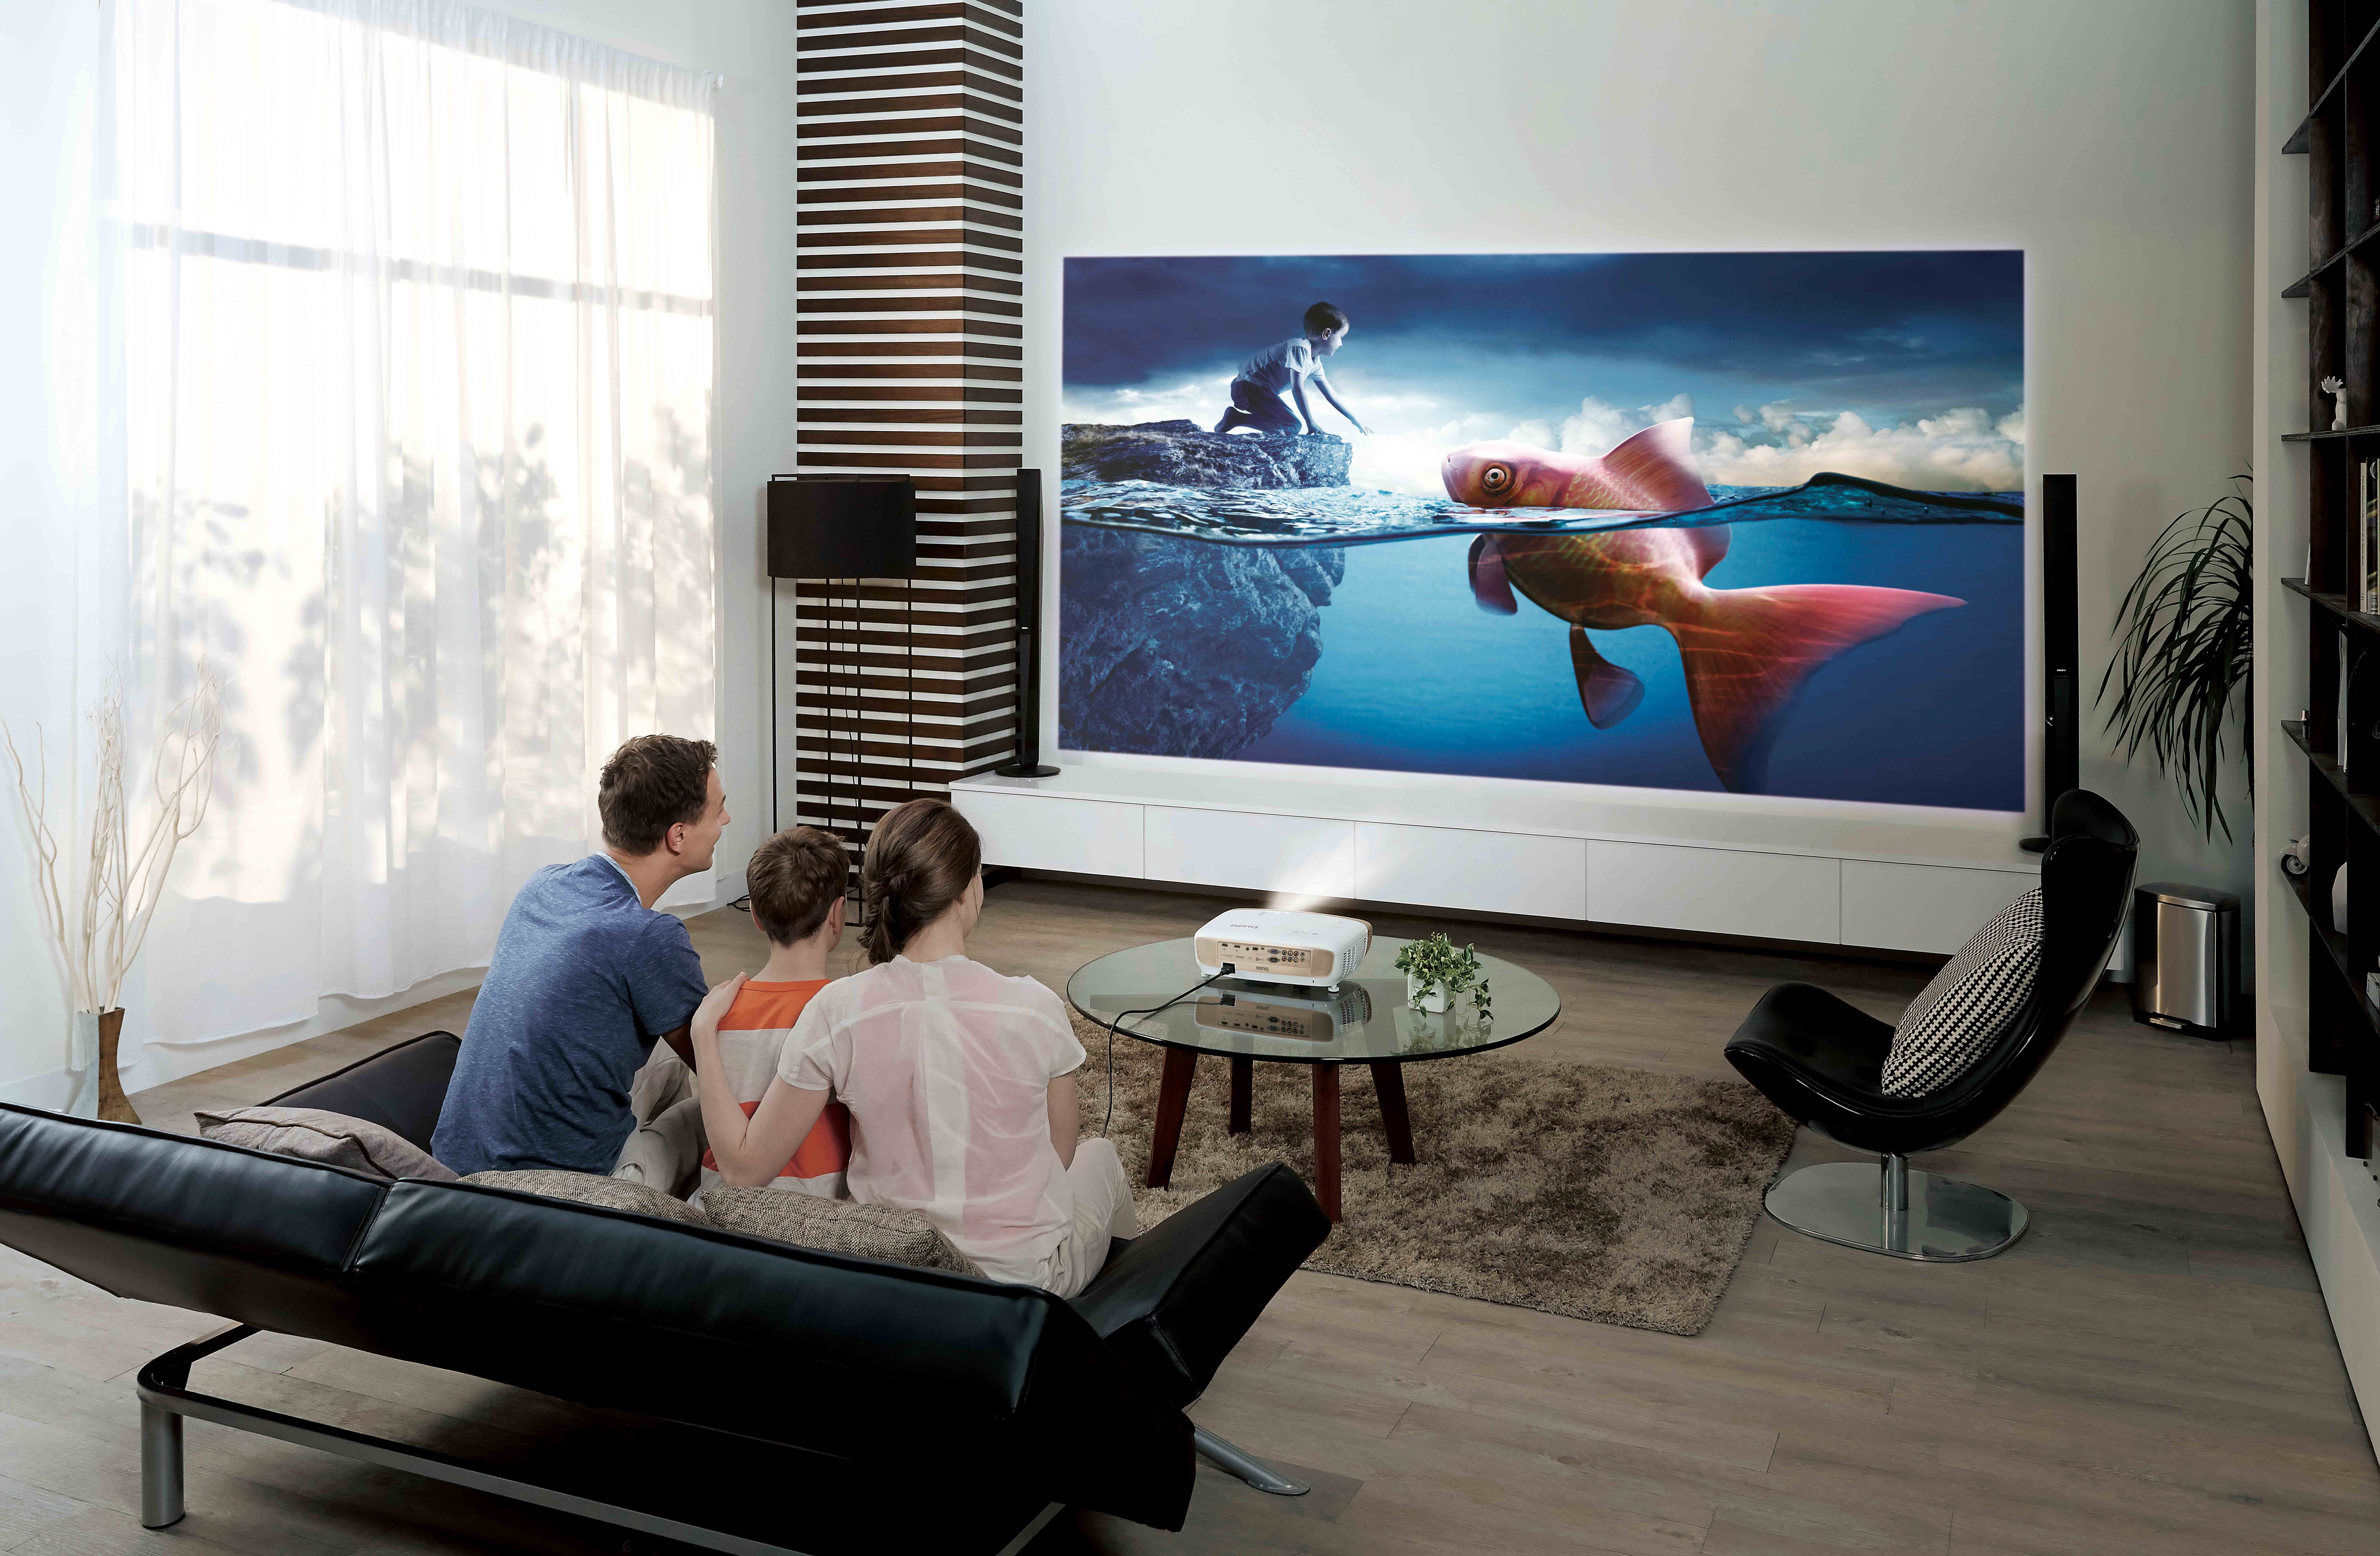 Телевизоры какой марки лучше покупать: рейтинг самых надежных фирм-производителей на 2021-2022 год